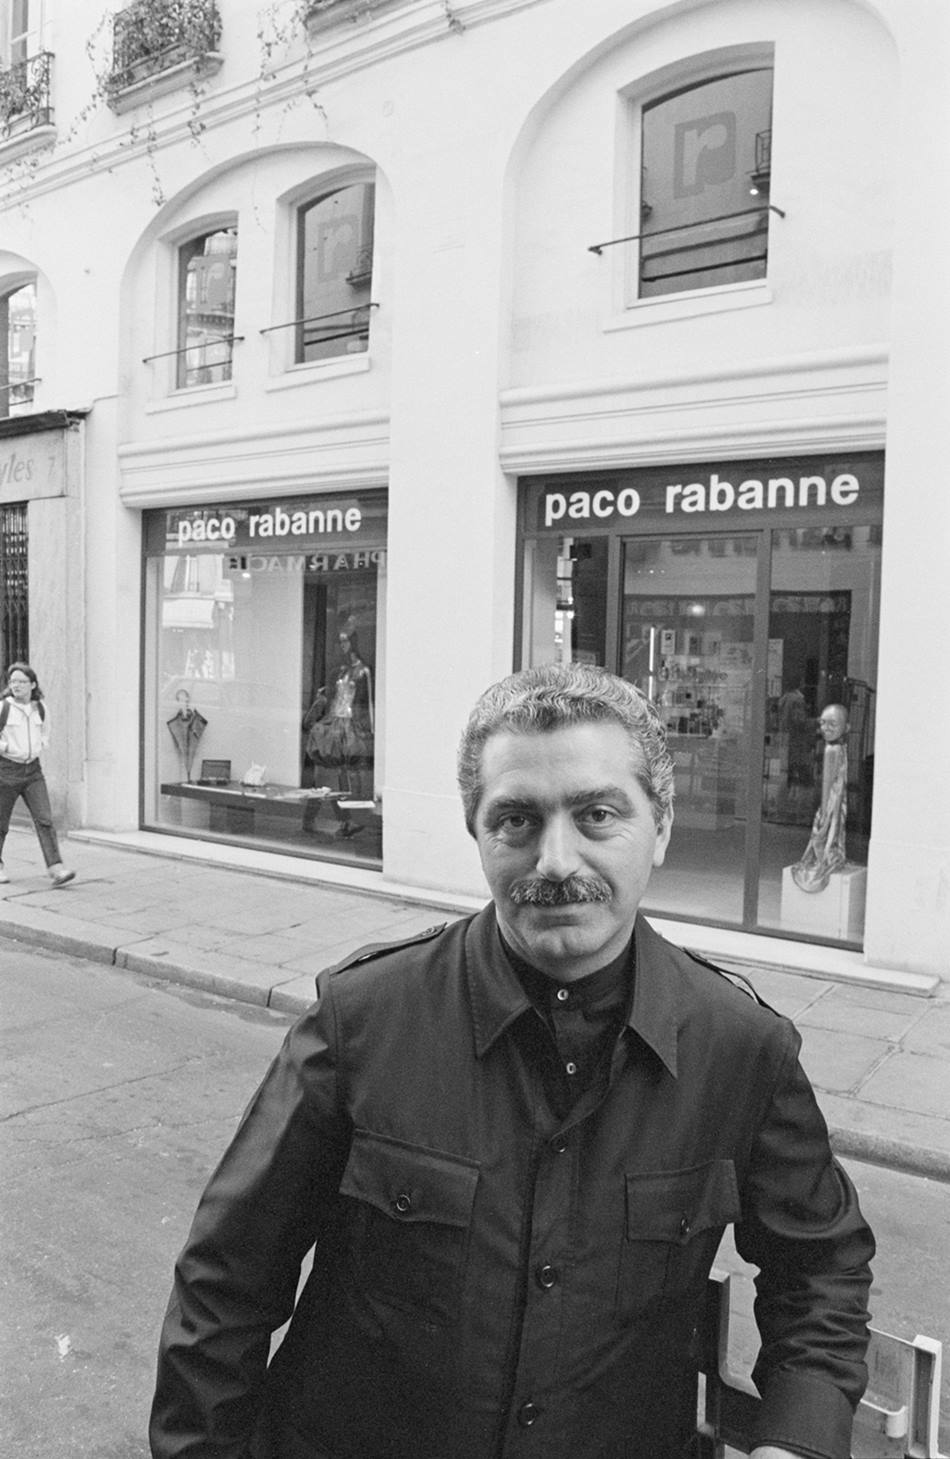 O estilista Paco Rabanne, um homem branco e de meia idade, com cabelos e barba grisalhos, posa para foto em uma loja de roupa da sua própria marca. - Metrópoles